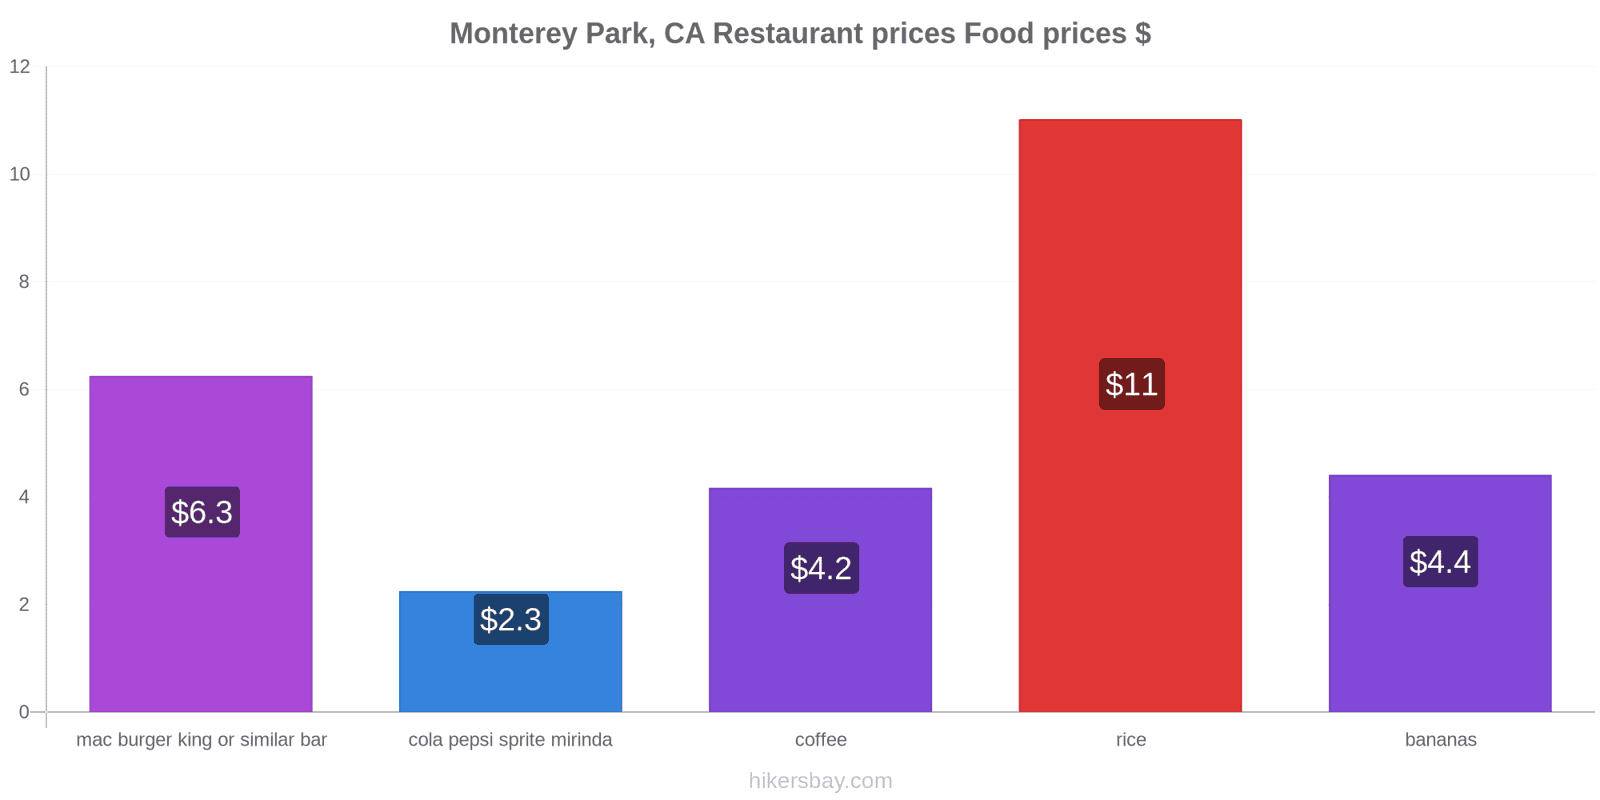 Monterey Park, CA price changes hikersbay.com